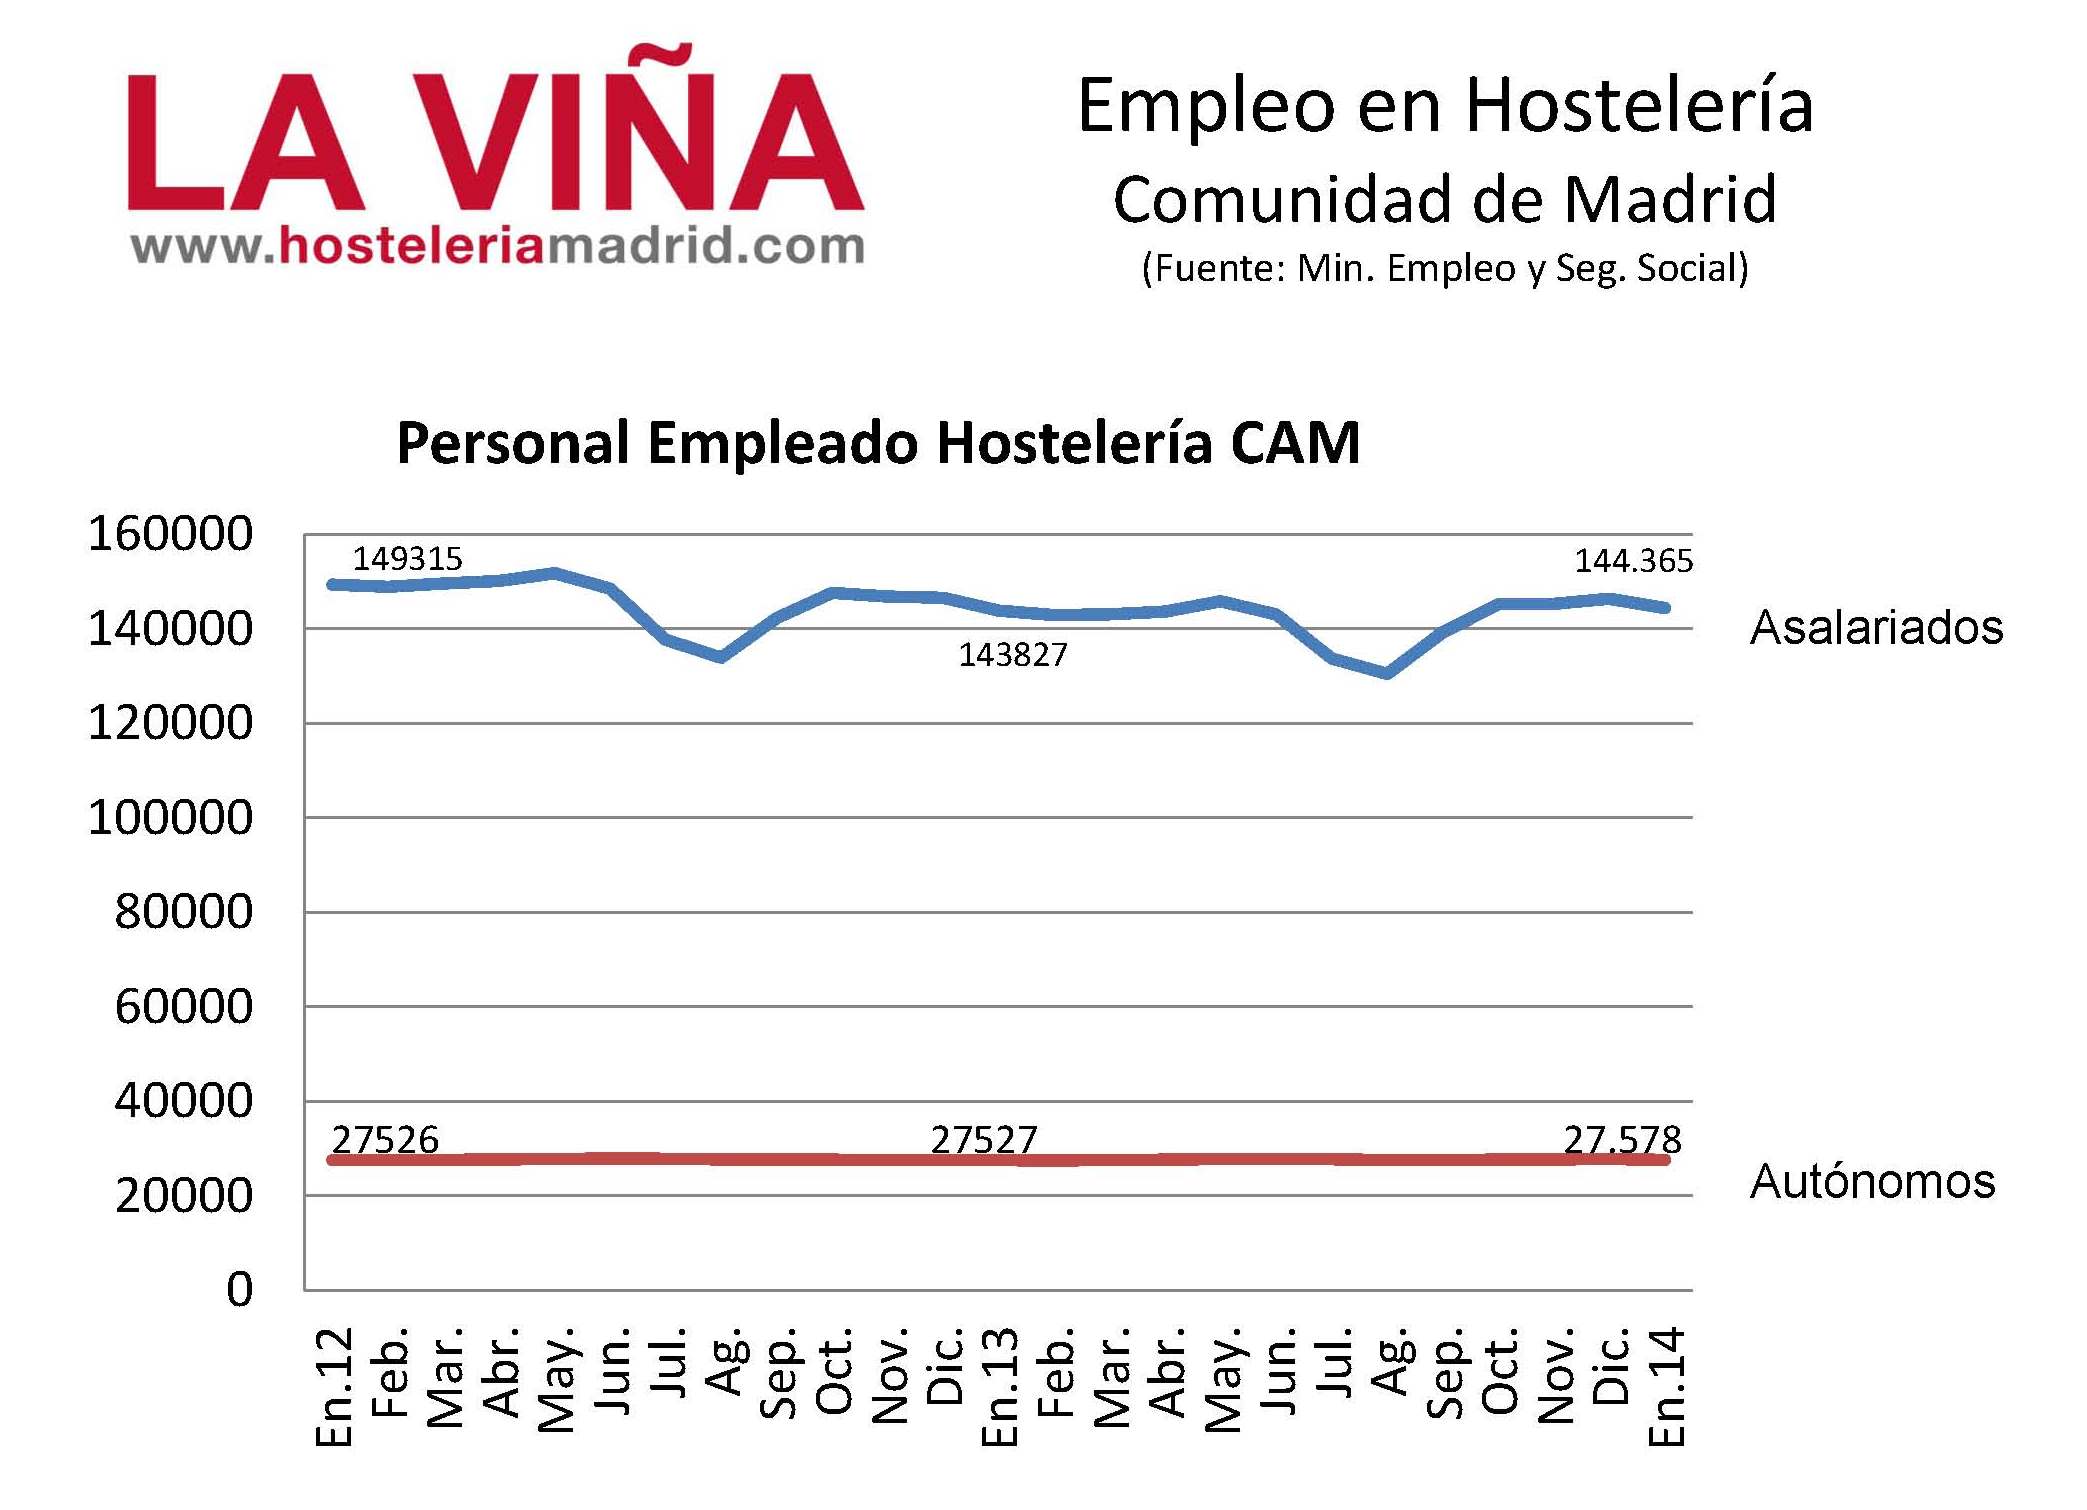 Enero registra un 0,4% más de trabajadores asalariados en la hostelería madrileña - La Viña